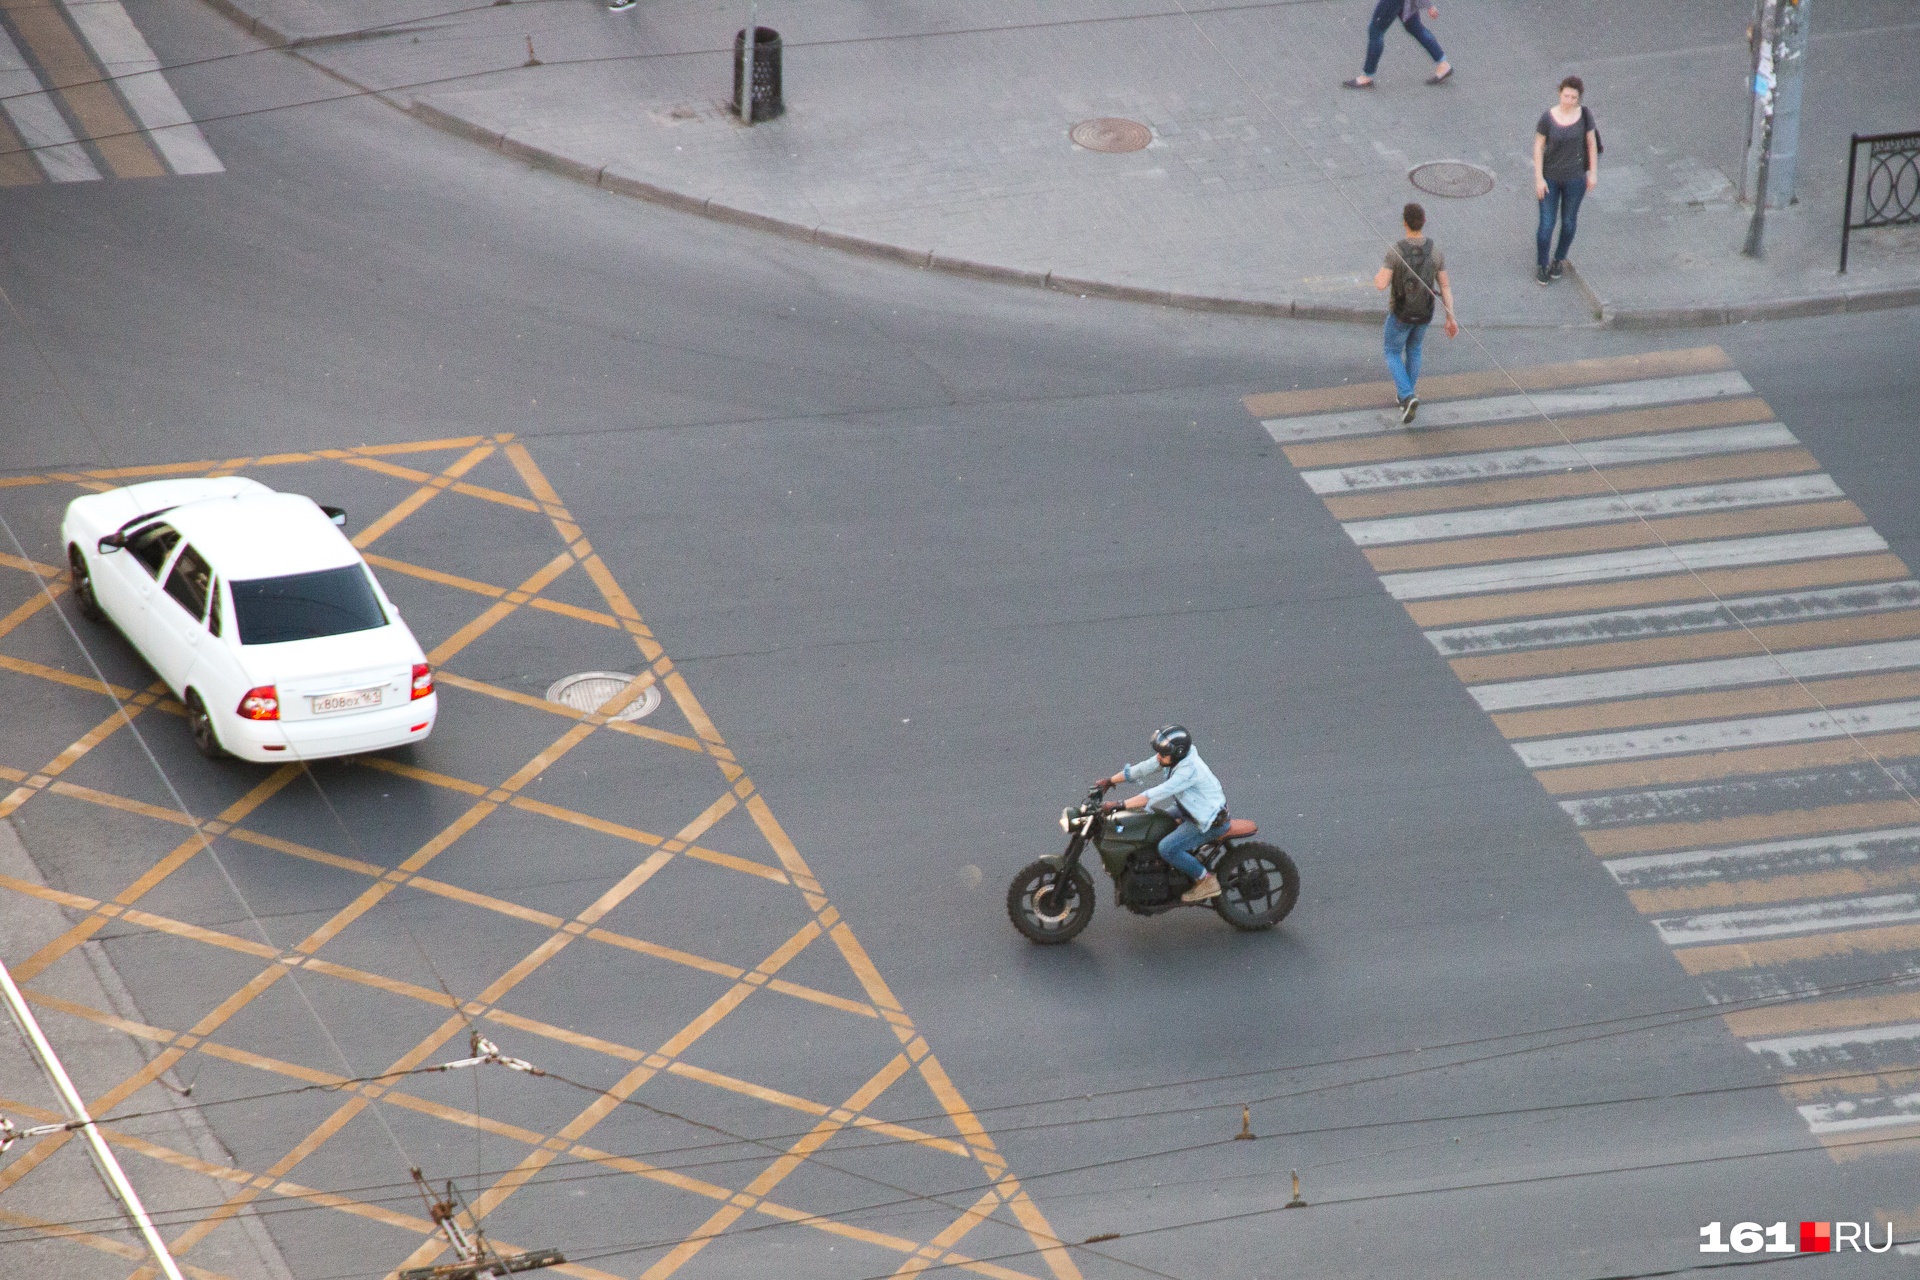 Видео погони за мотоциклисткой-подростком опубликовали в Сети